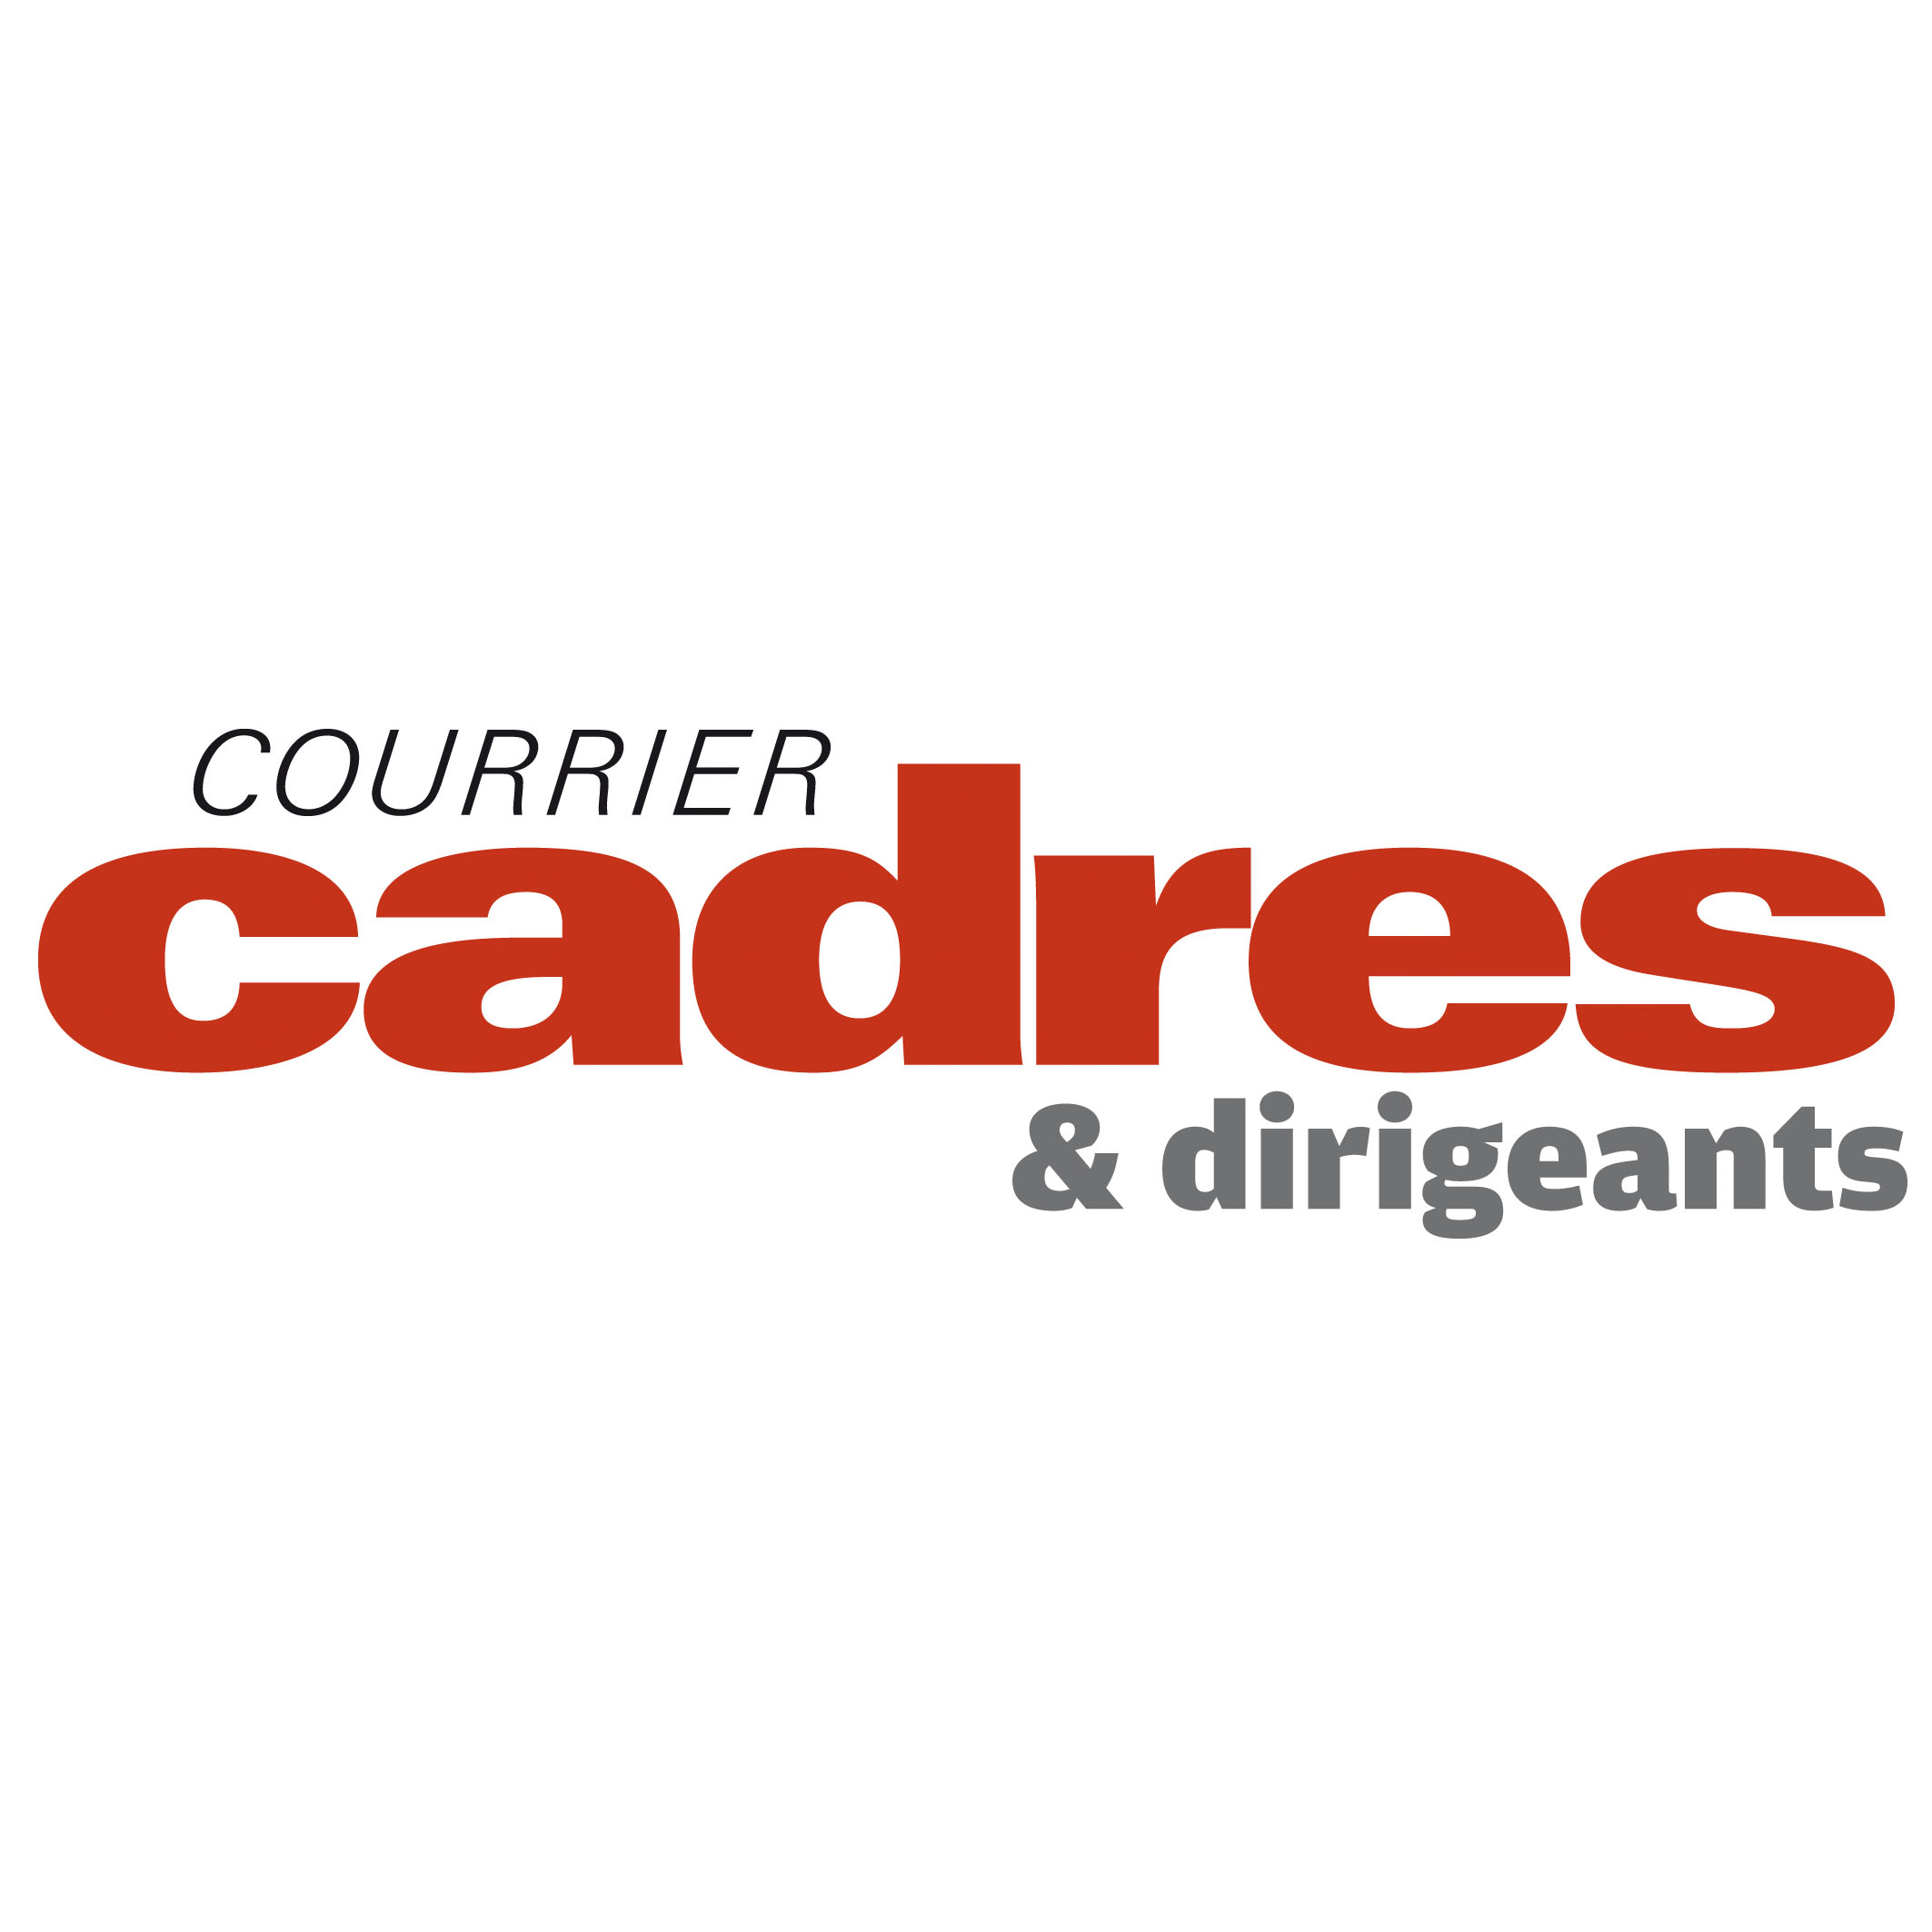 Obligation de reclassement des salariés dans un réseau de franchise (Courrier Cadres & Dirigeants, Janvier 2015)